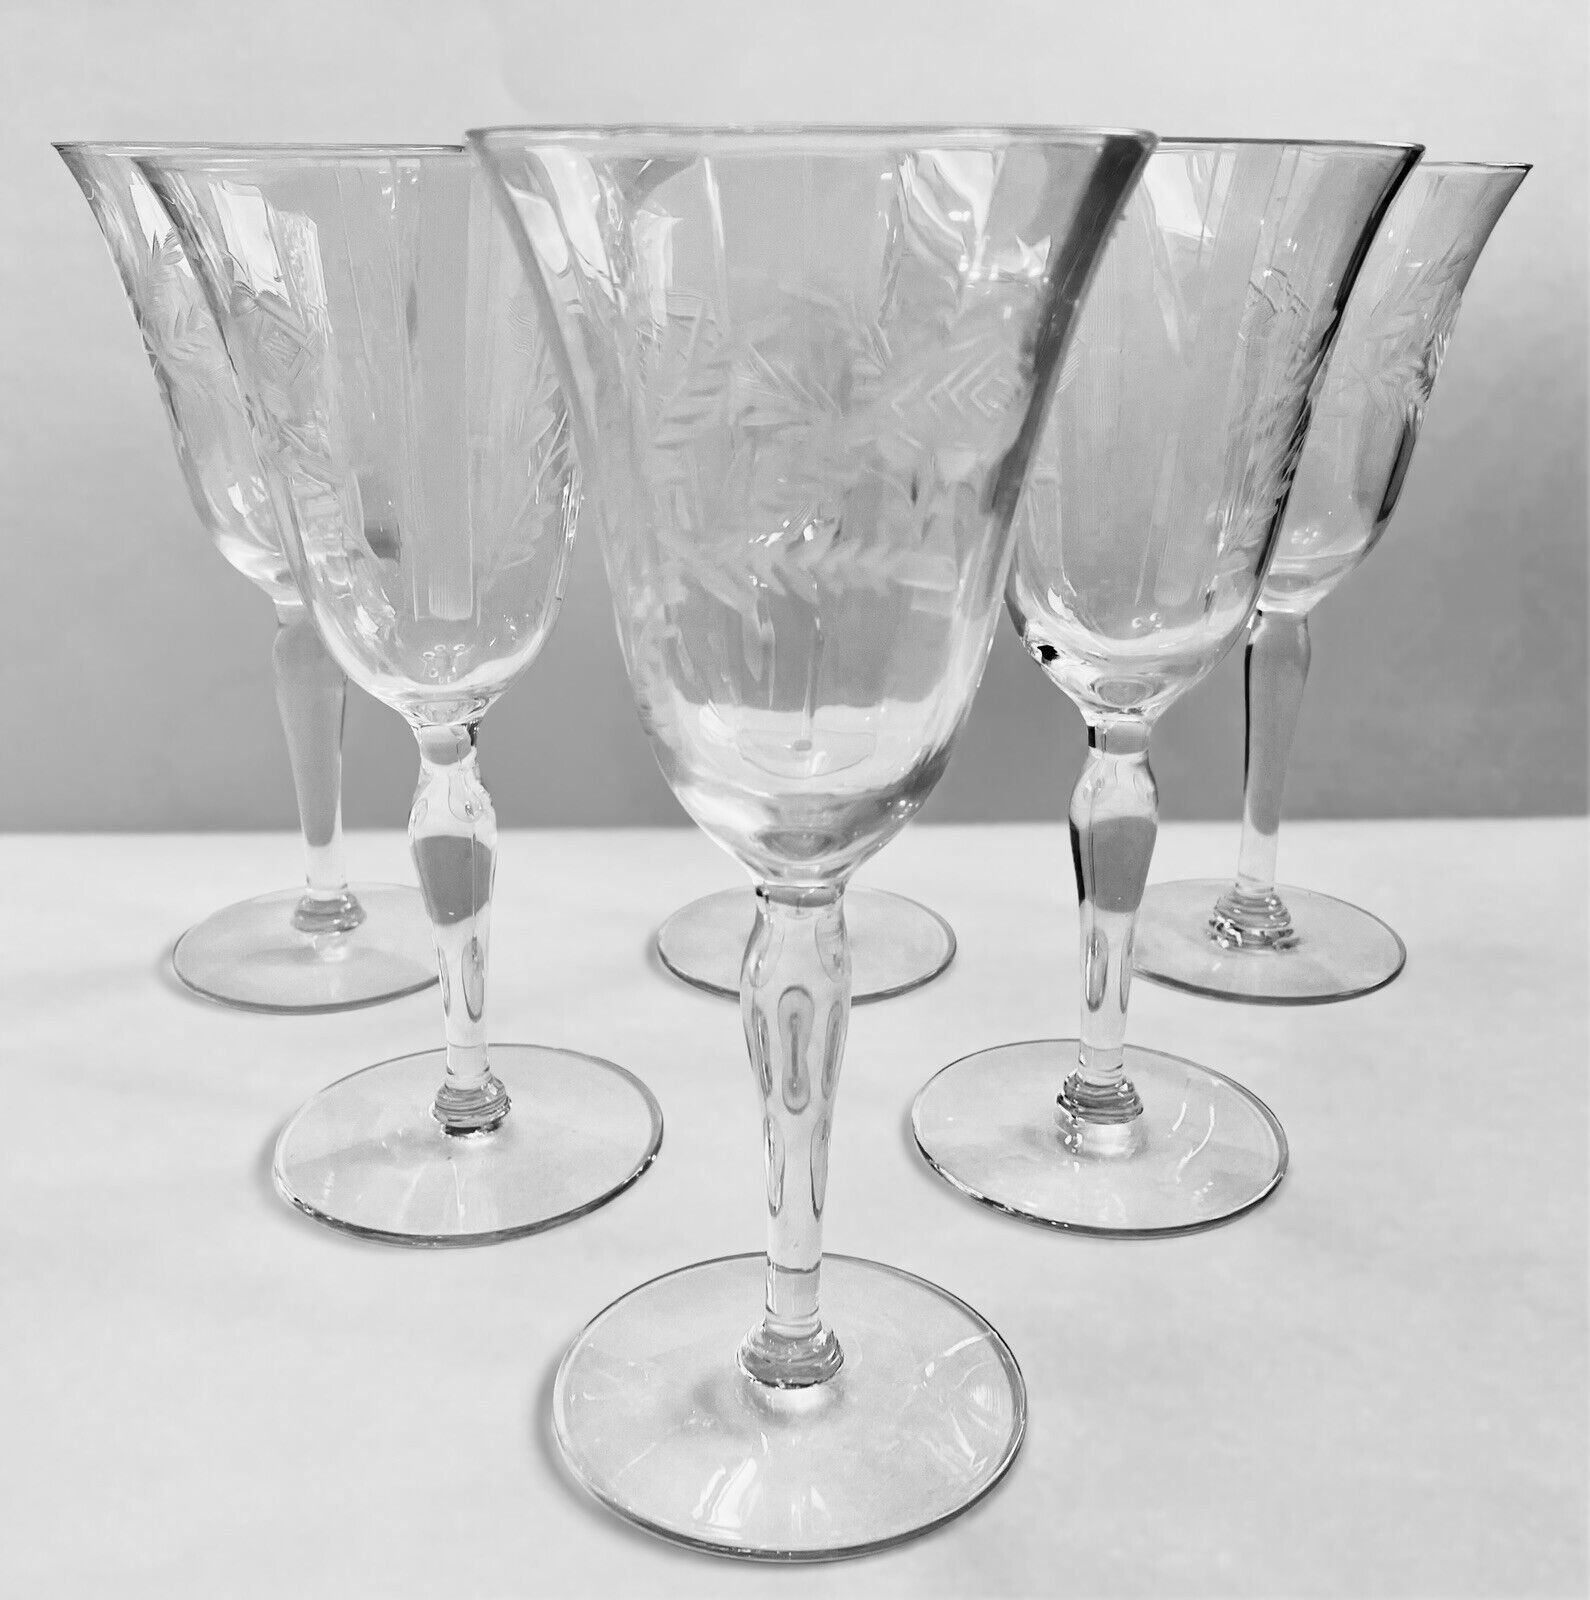 Vintage Stemware Etched Roses Crystal Wine Glasses Goblets Set of 6 Elegant MCM